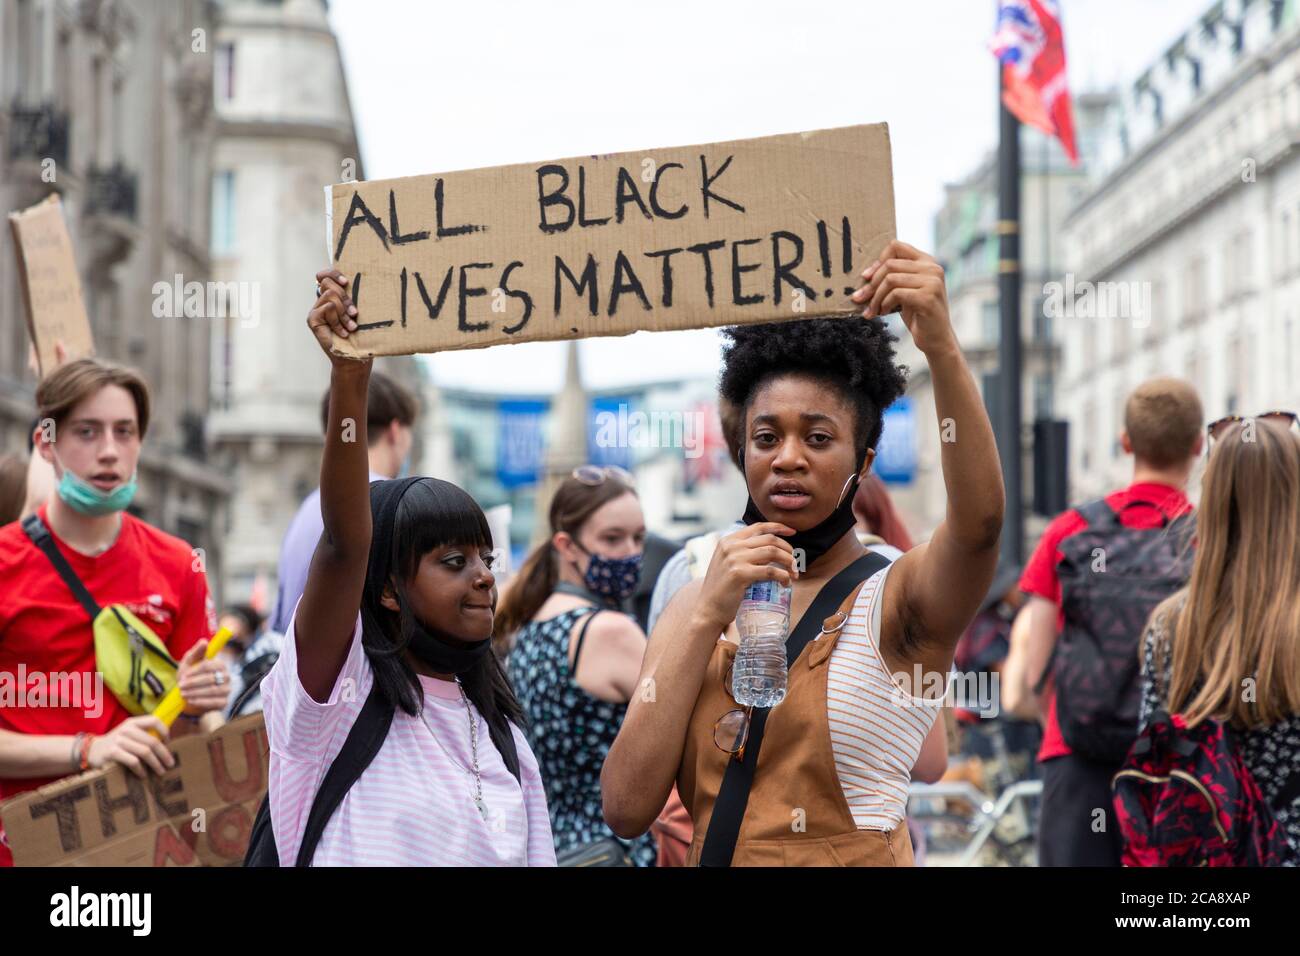 Deux militantes protestataires tiennent un panneau lors d'une manifestation Black Lives Matter, Oxford Circus, Londres, 2 août 2020 Banque D'Images